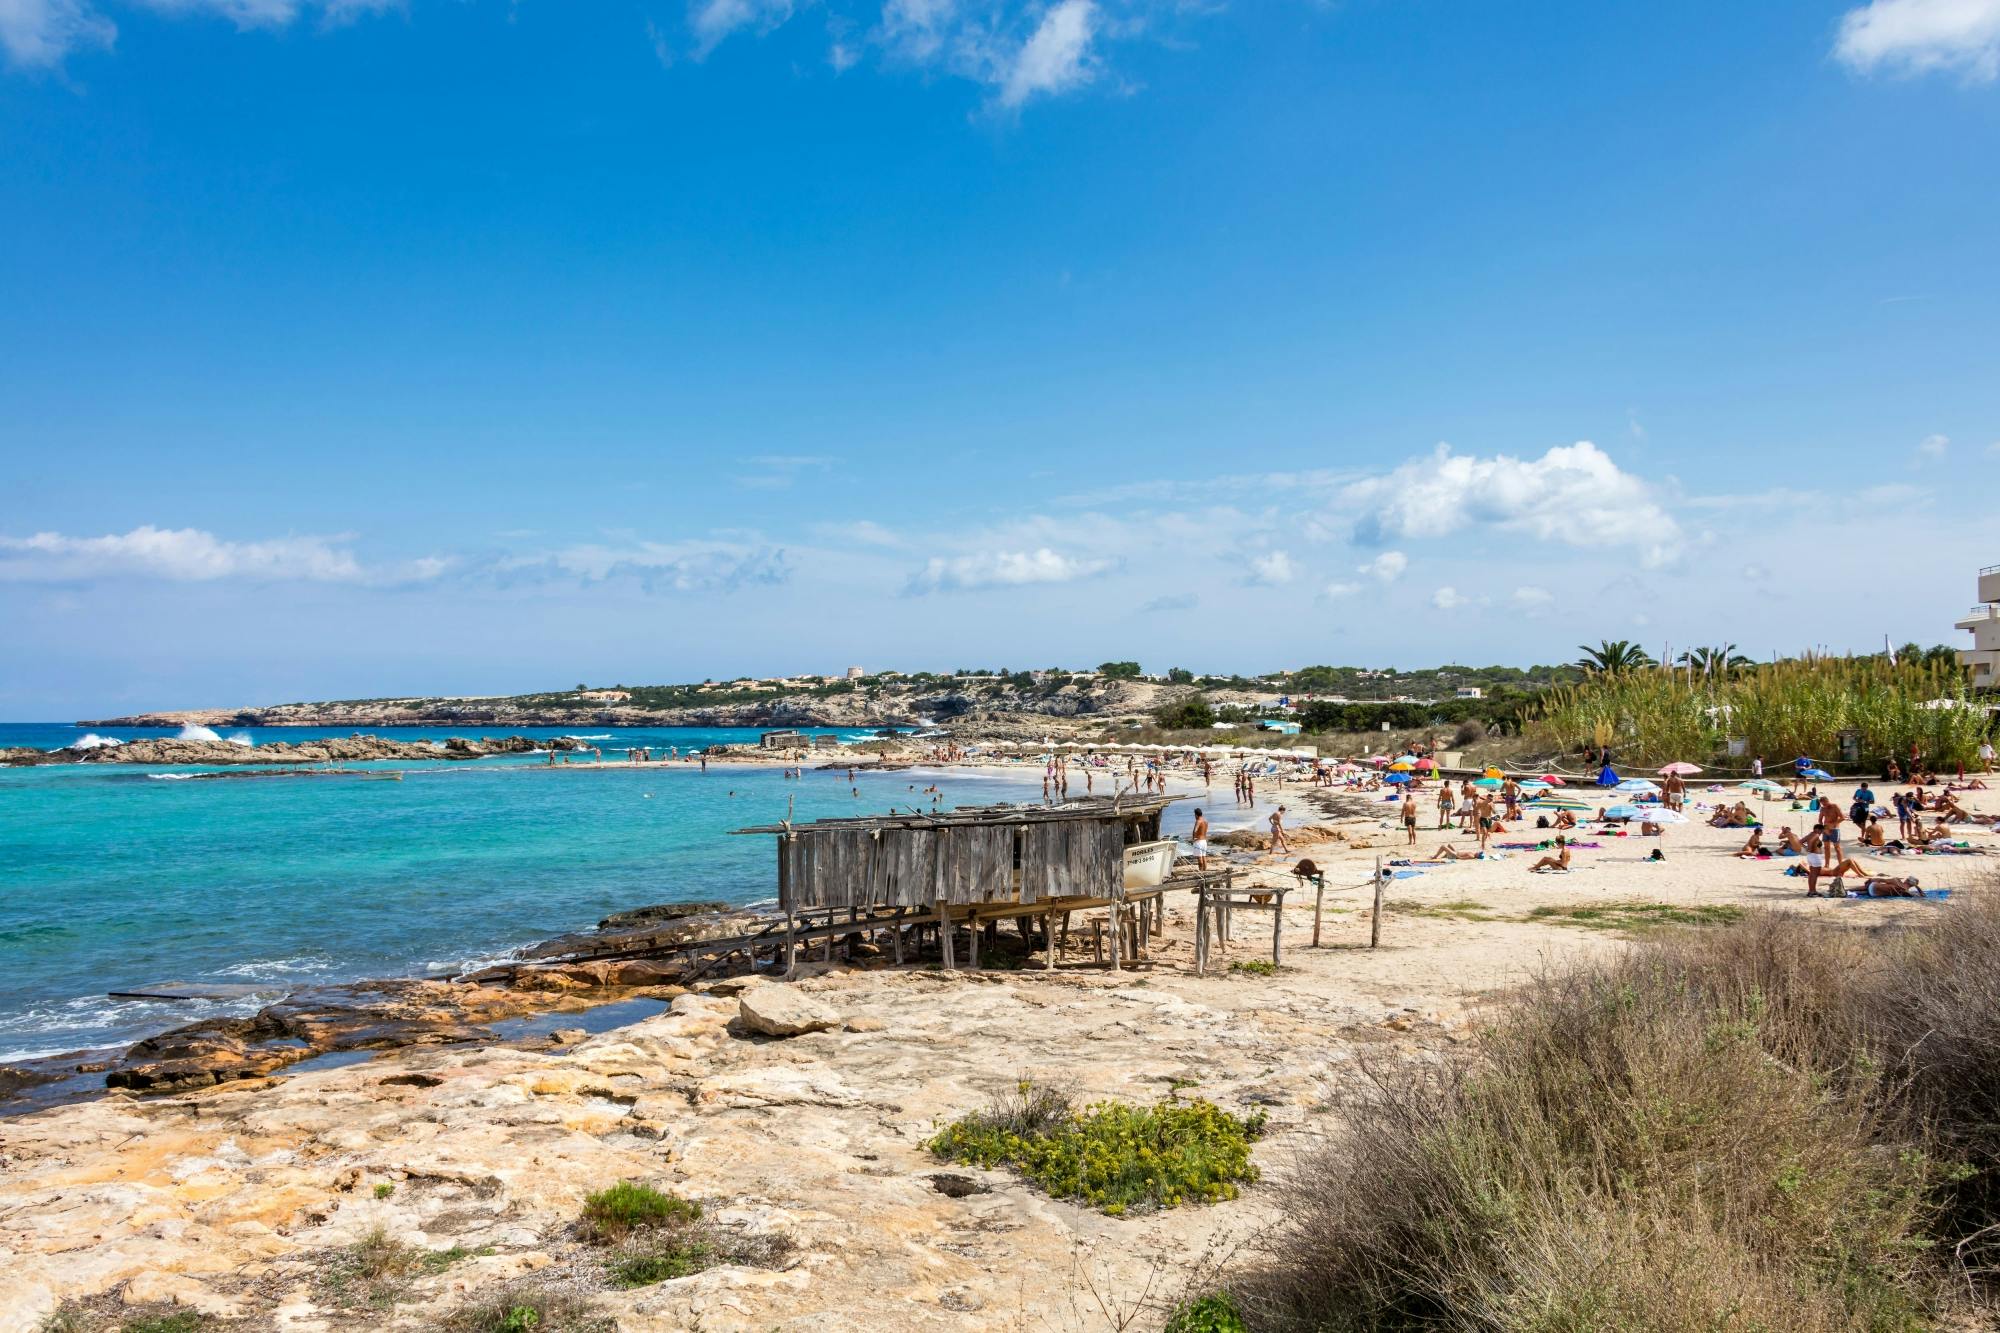 Privat tur til Formentera med lunsj ved stranden